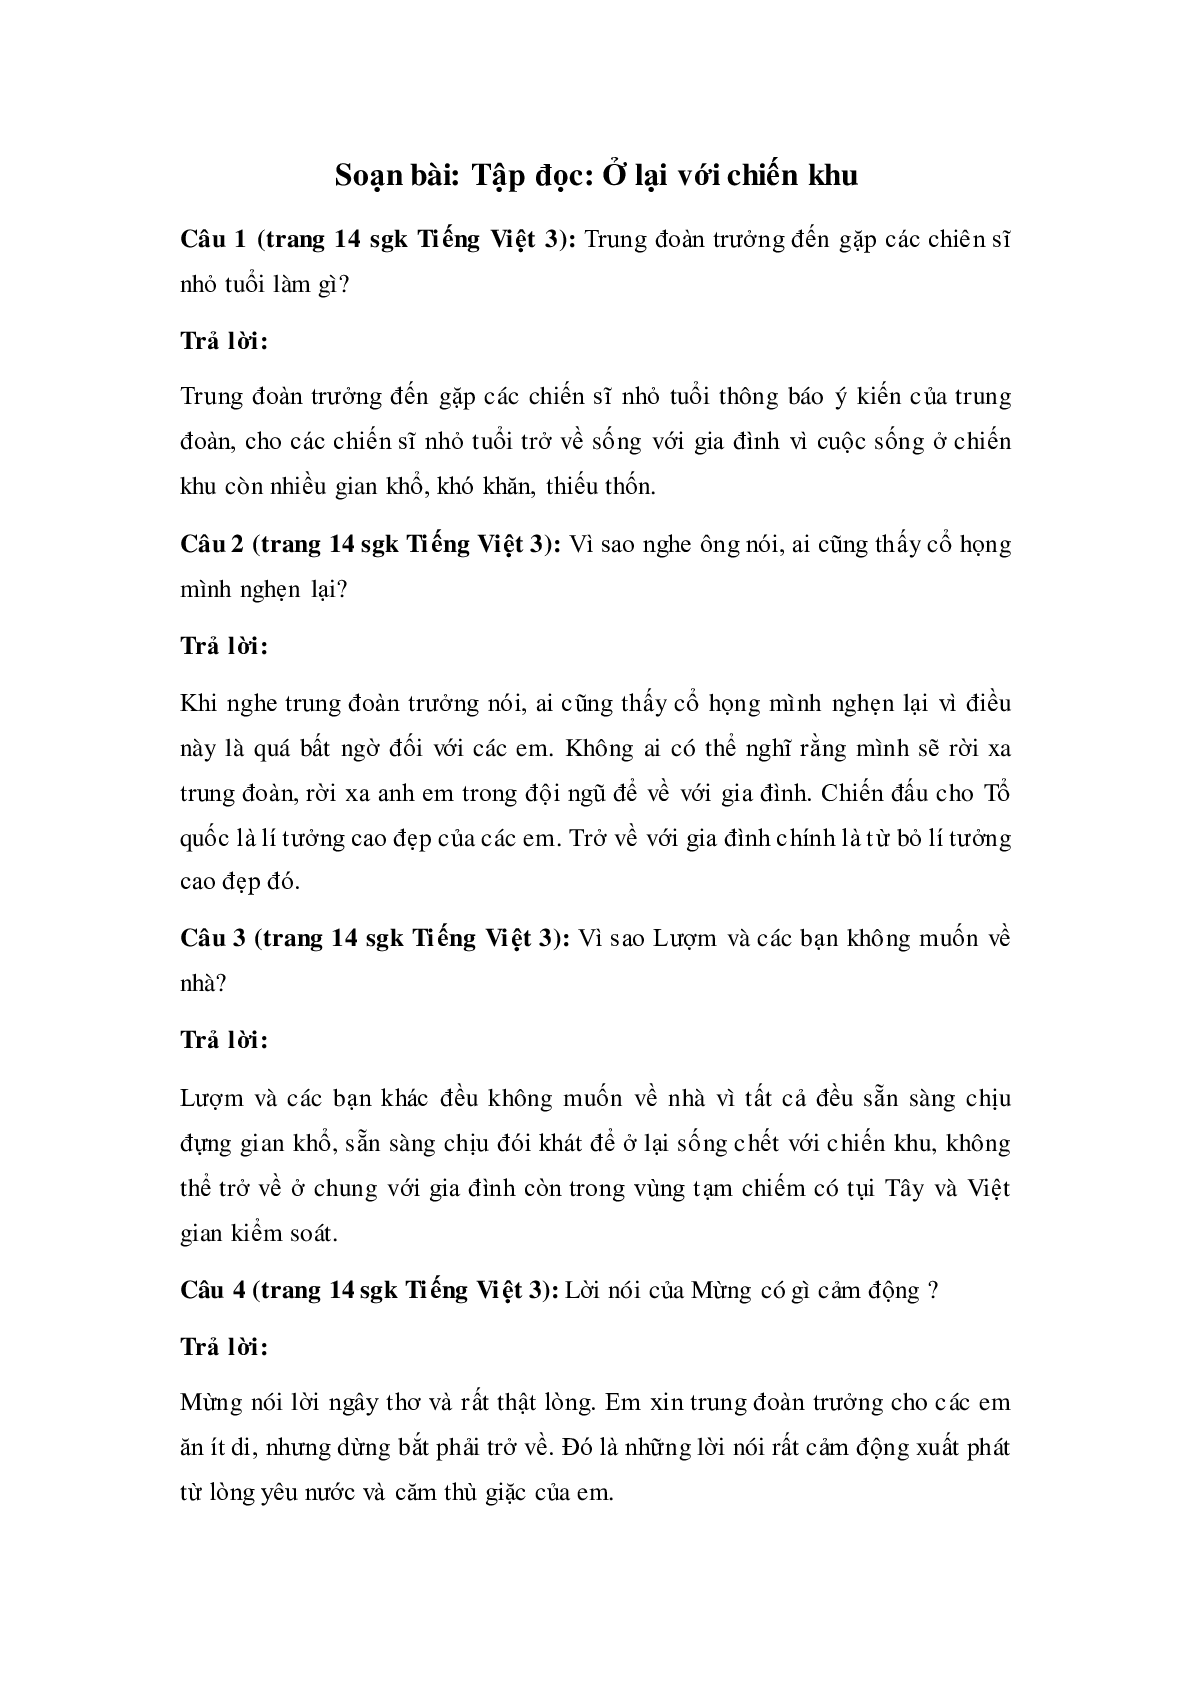 Soạn Tiếng Việt lớp 3: Tập đọc: Ở lại với chiến khu mới nhất (trang 1)